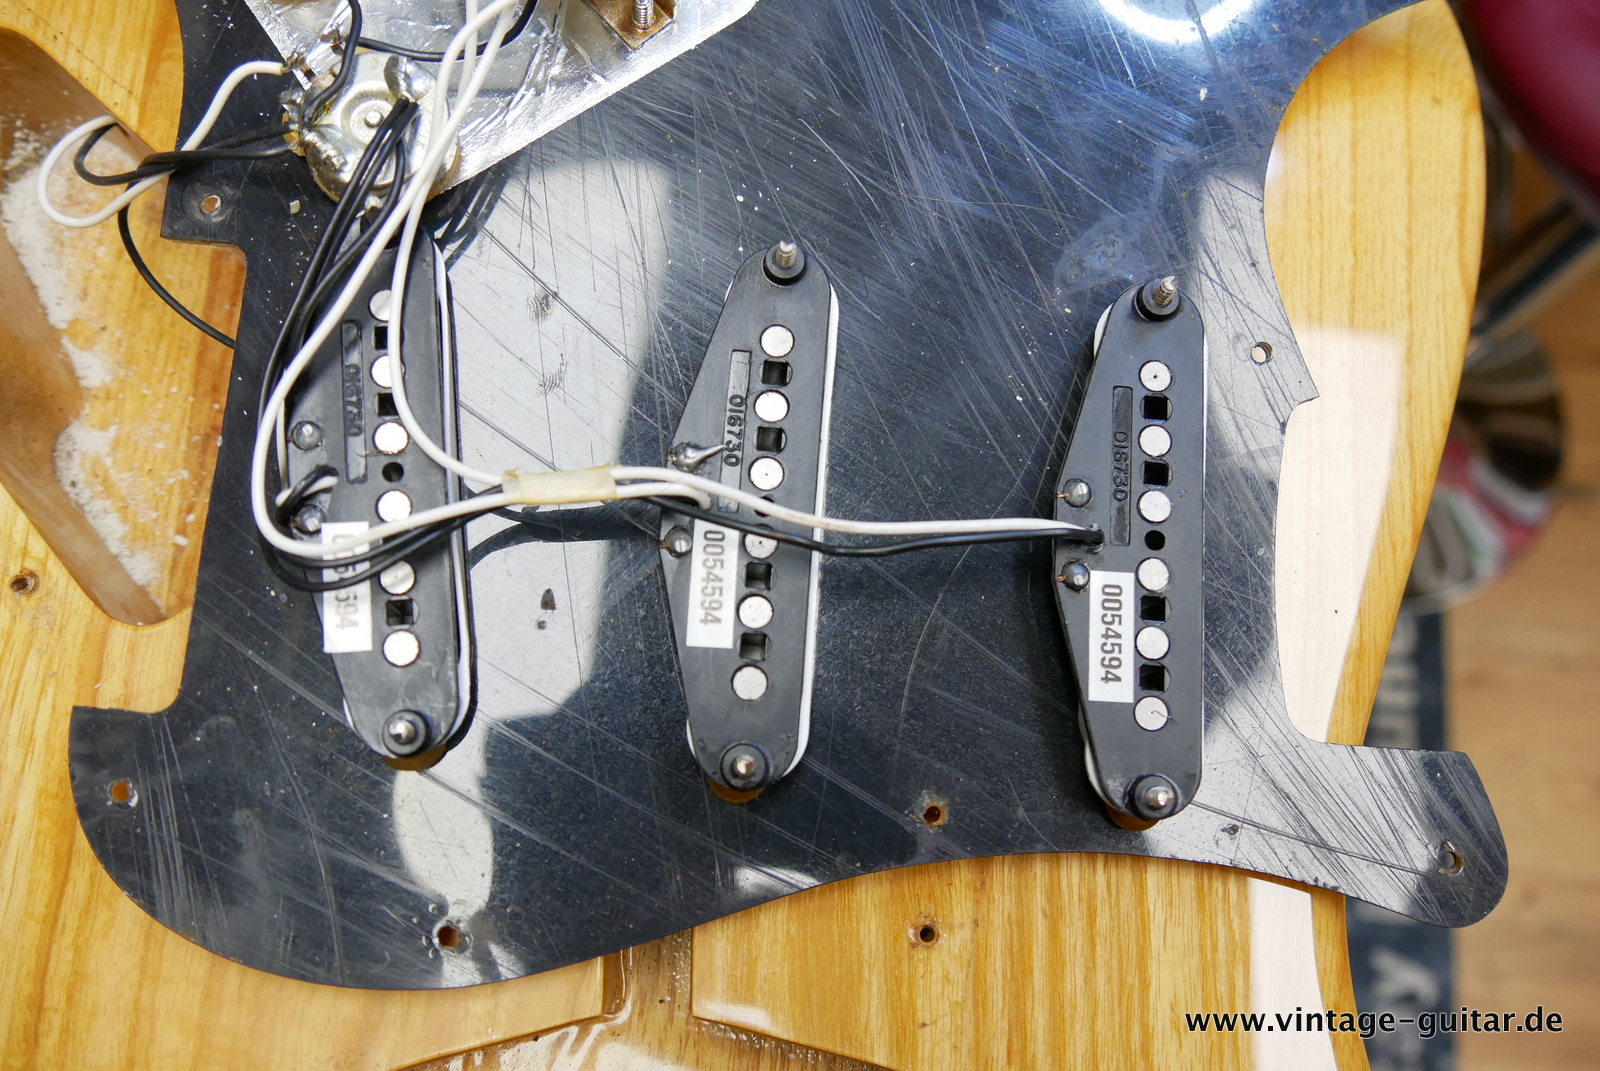 Fender_Stratocaster_70s_reissue_maple_neck_1999_Mexico-015.JPG